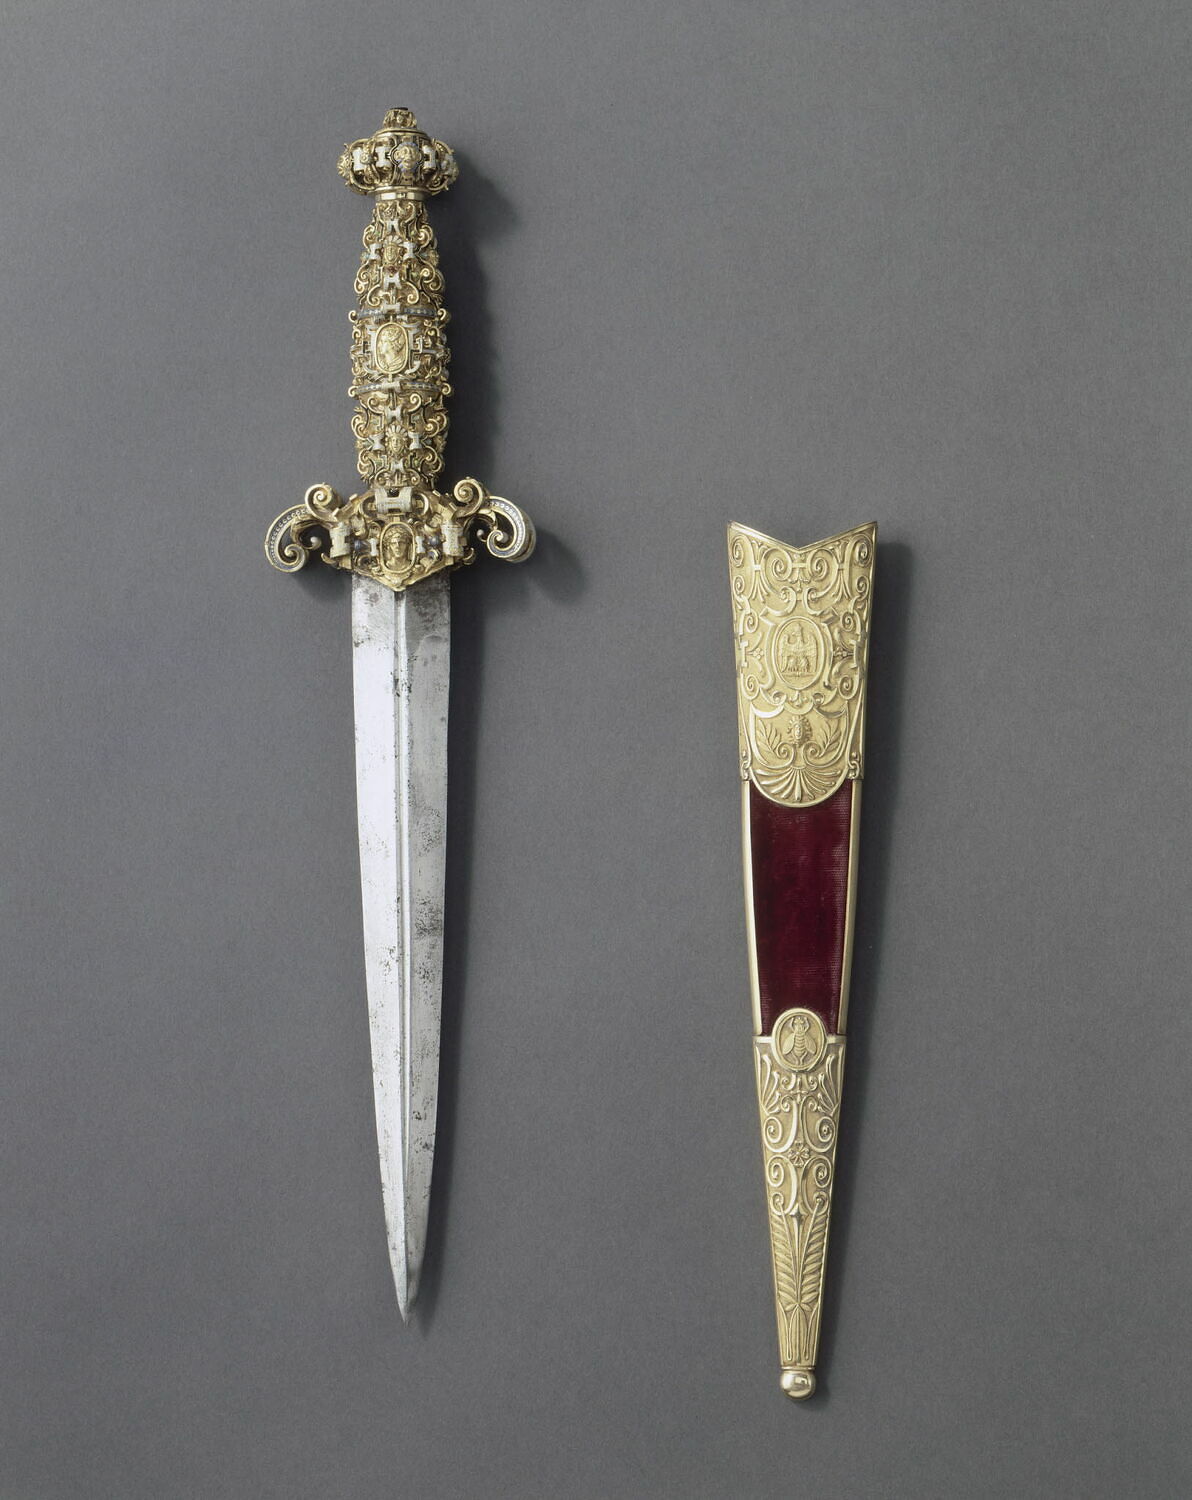 Grand_Master_of_Malta's_dagger_(Louvre).JPG